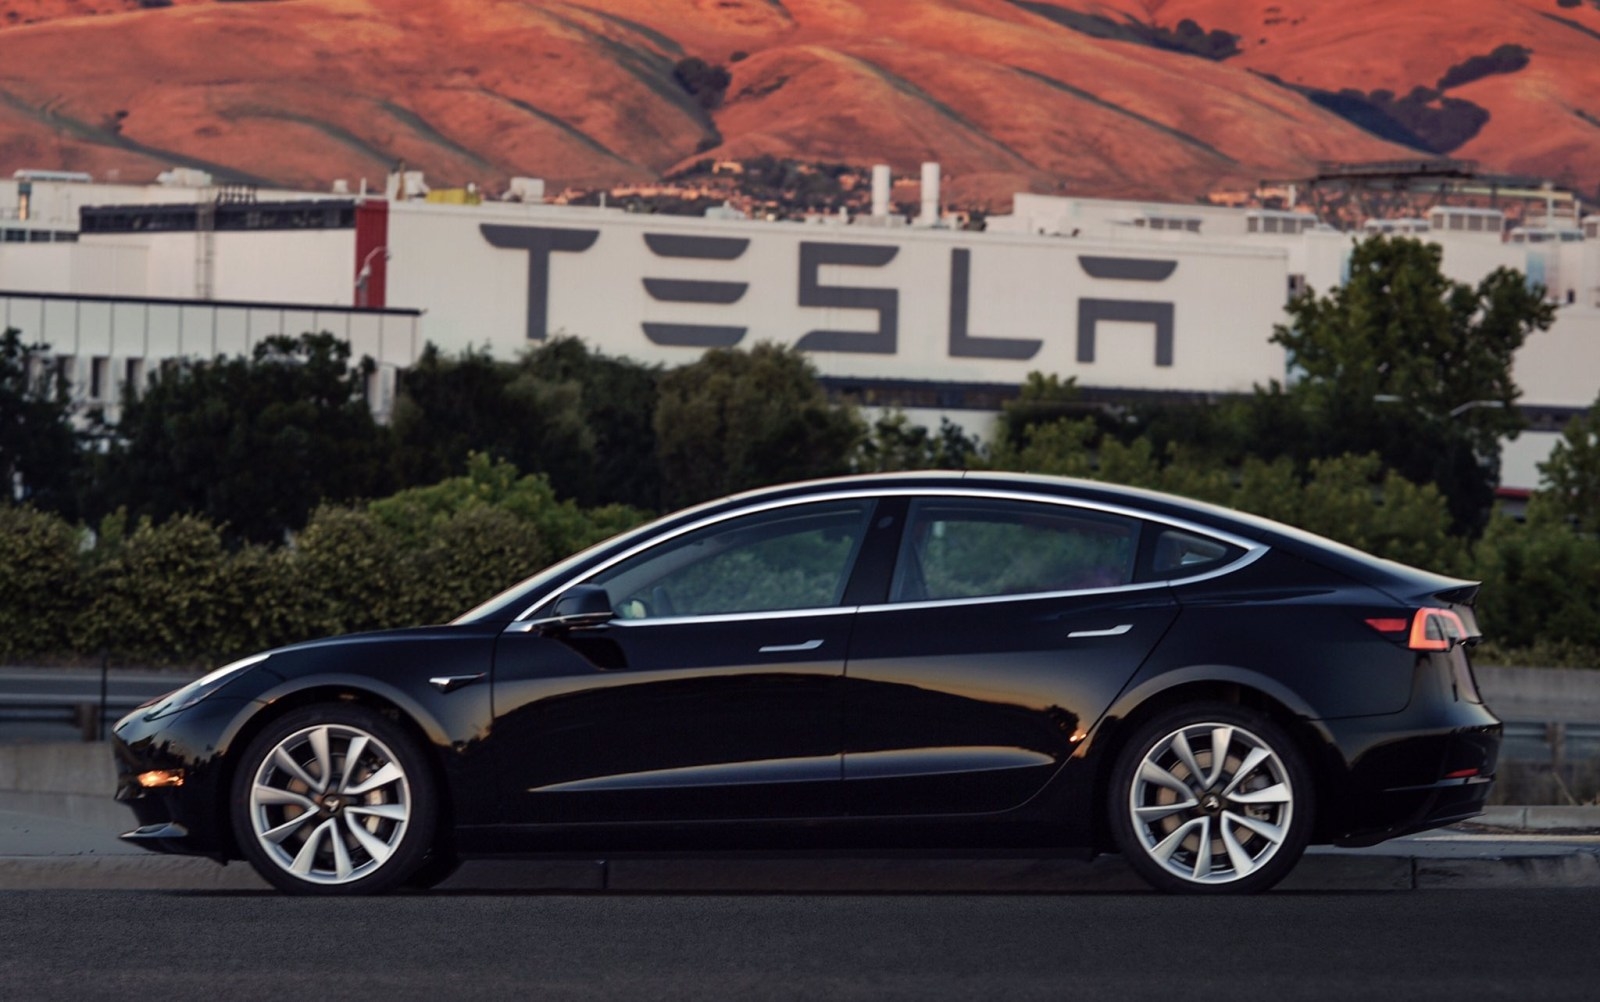 Илон Маск показал первую серийную Tesla Model 3 (фото)